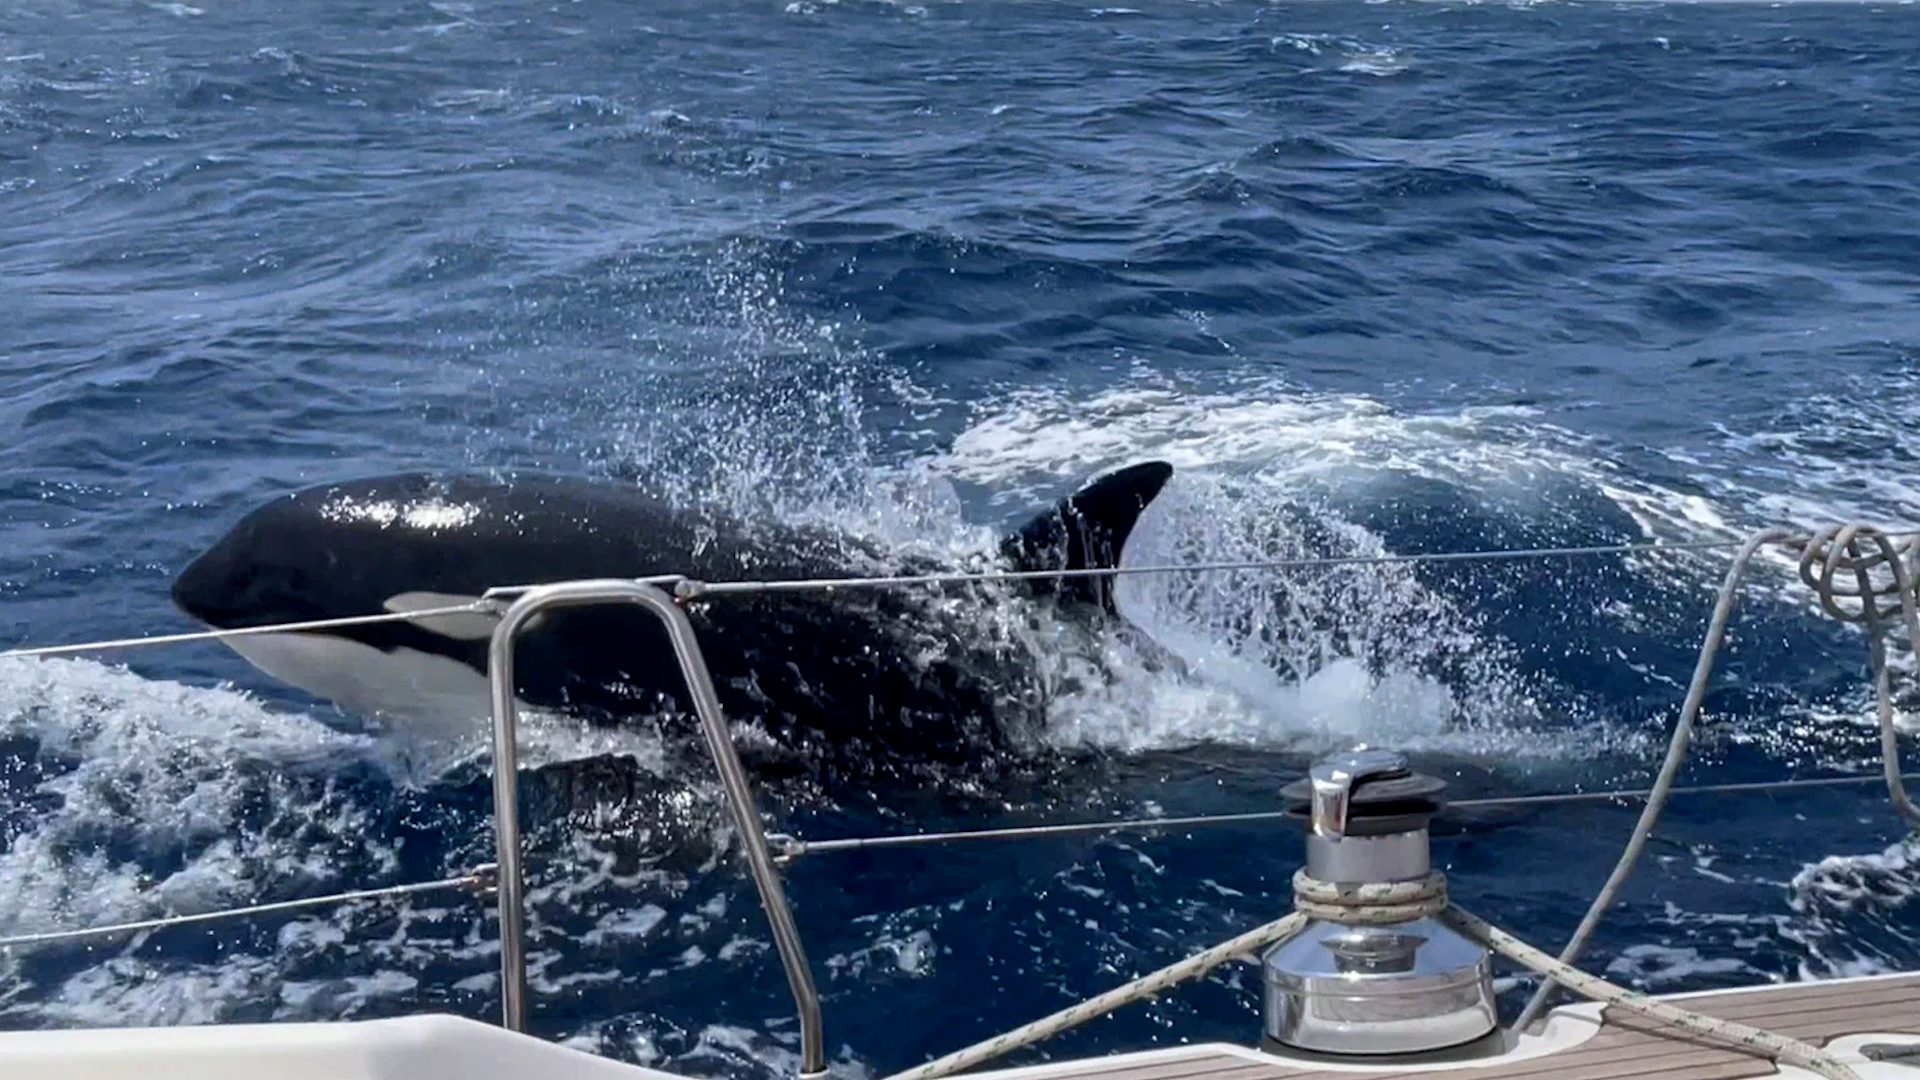 Tại sao cá voi sát thủ liên tiếp tấn công thuyền buồm ở Iberia? - Ảnh 1.